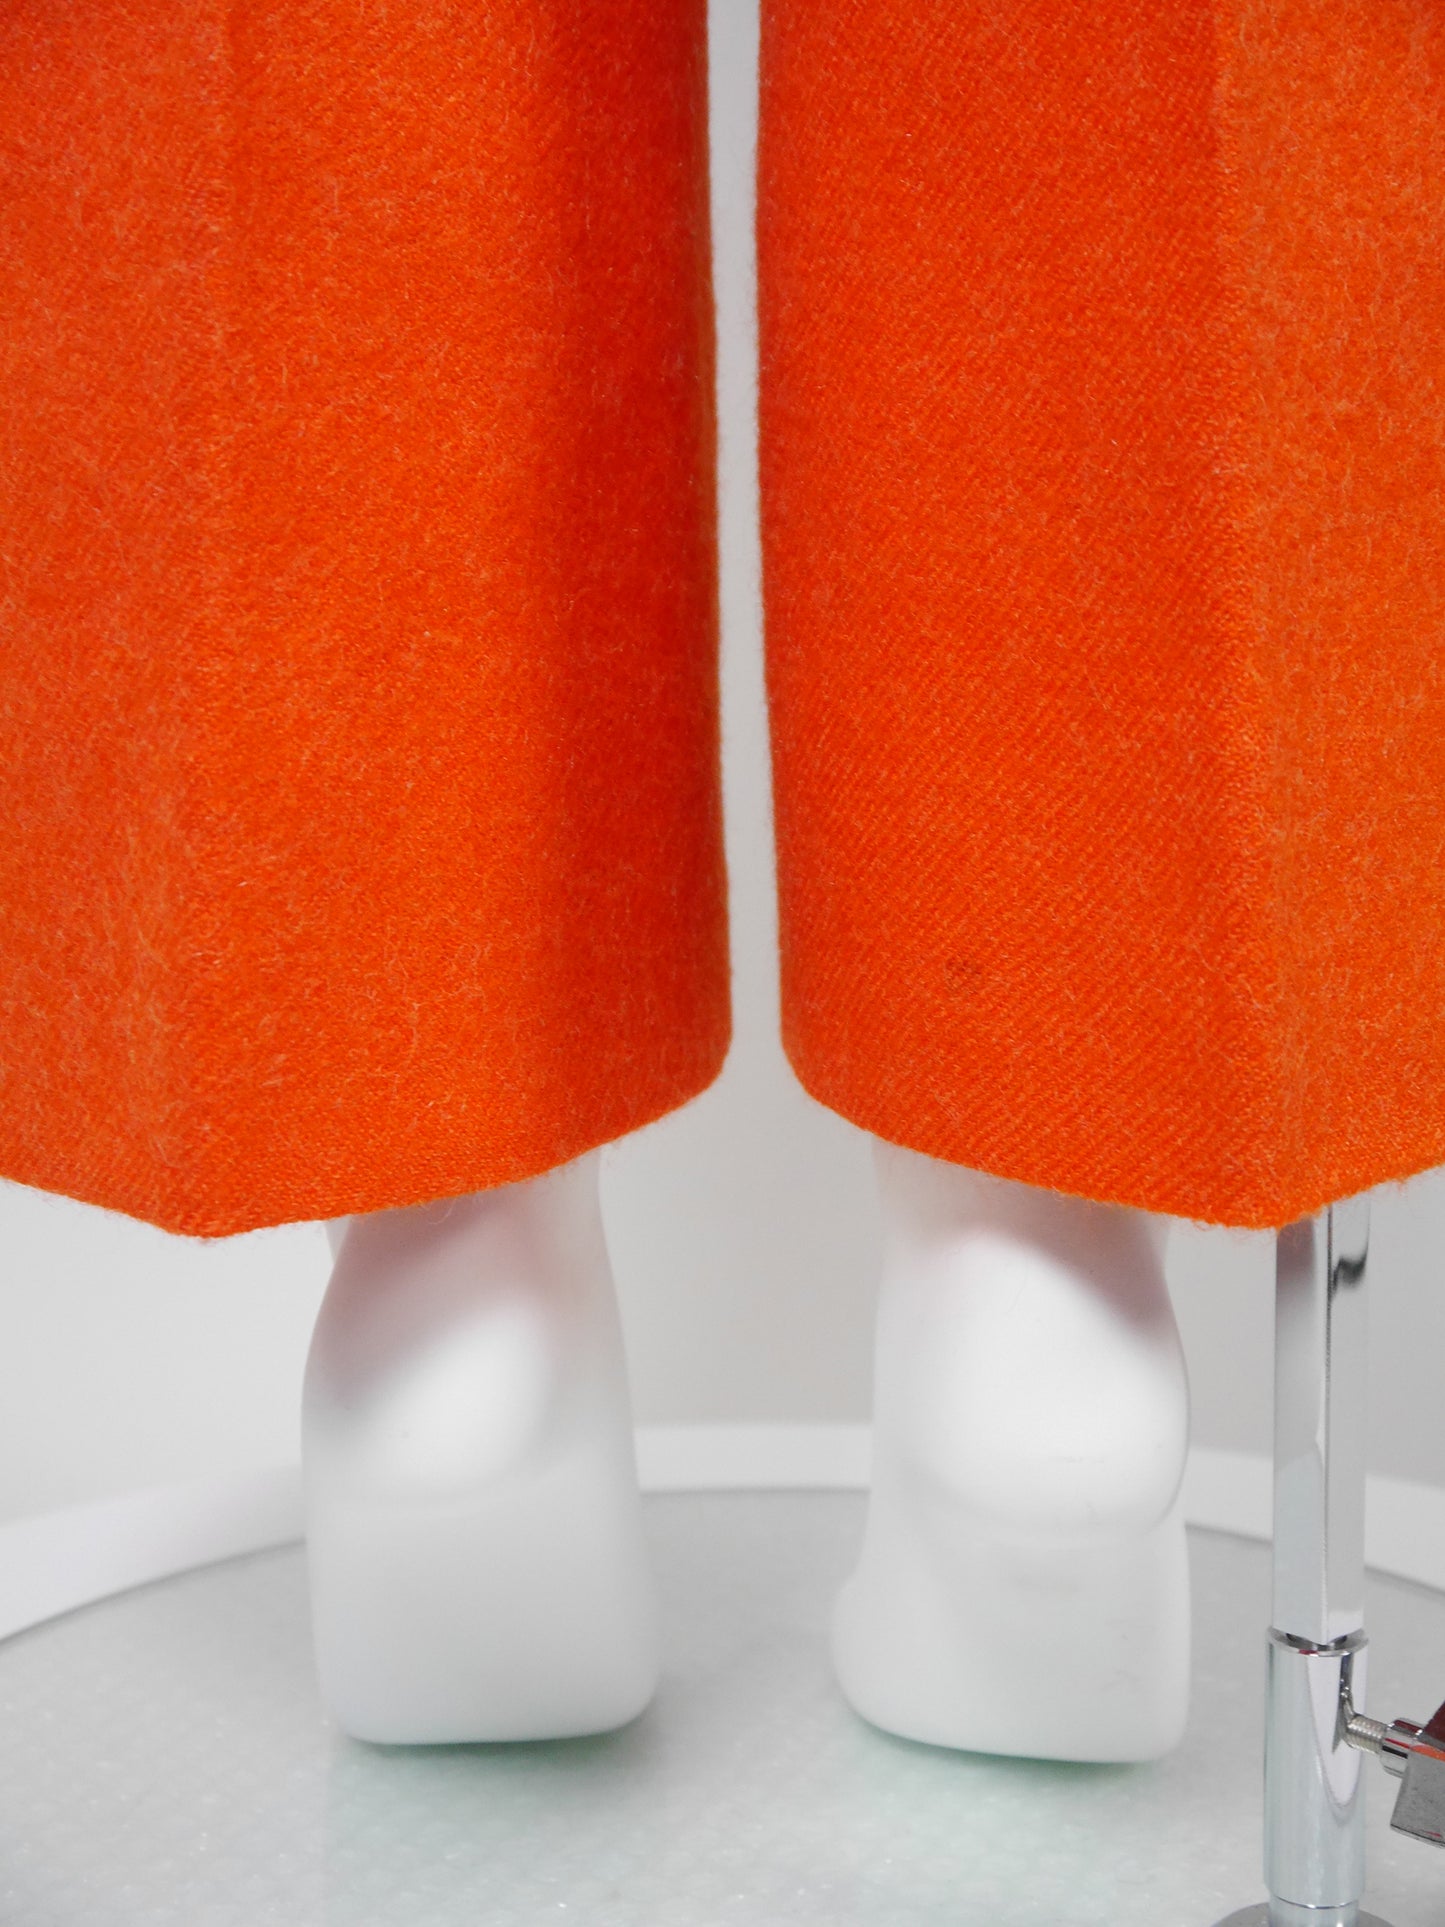 COURRÈGES 1960s 1970s Vintage Orange Wool Top & Pants Suit w/ Logo Size XS